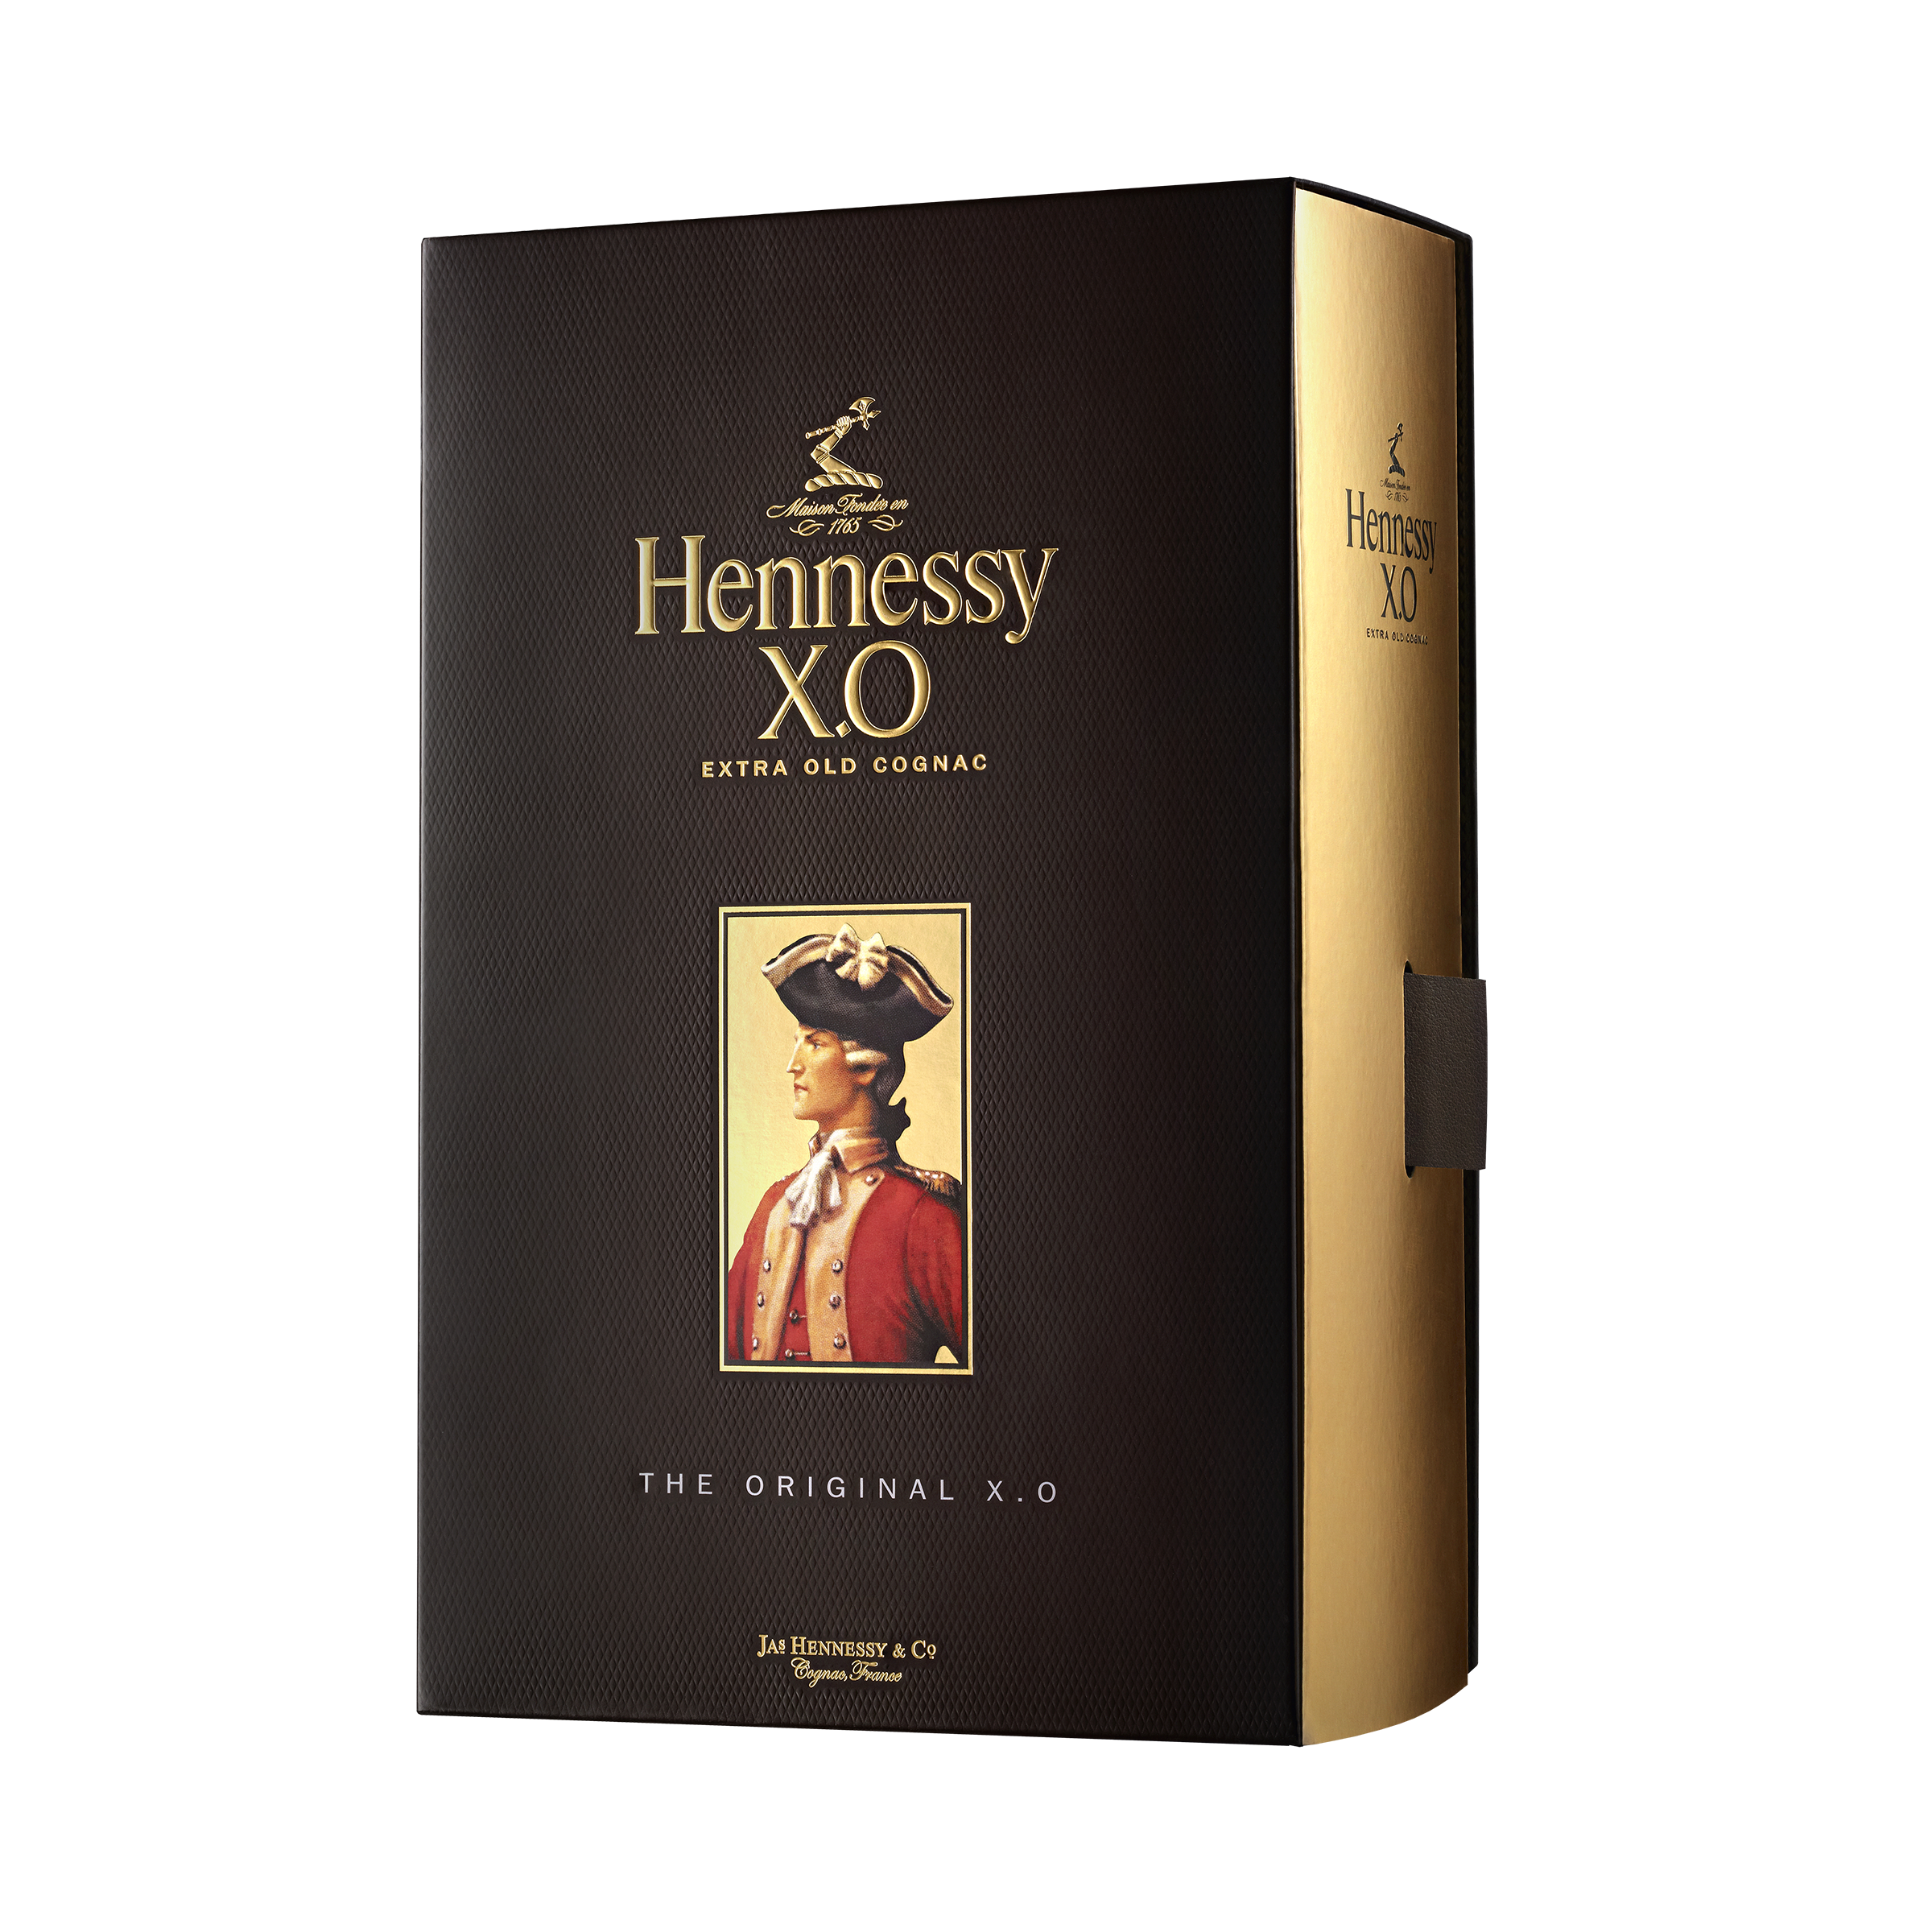 Коньяк Hennessy XO 20 років витримки, в подарунковій упаковці, 40%, 0,7 л (1103) - фото 3